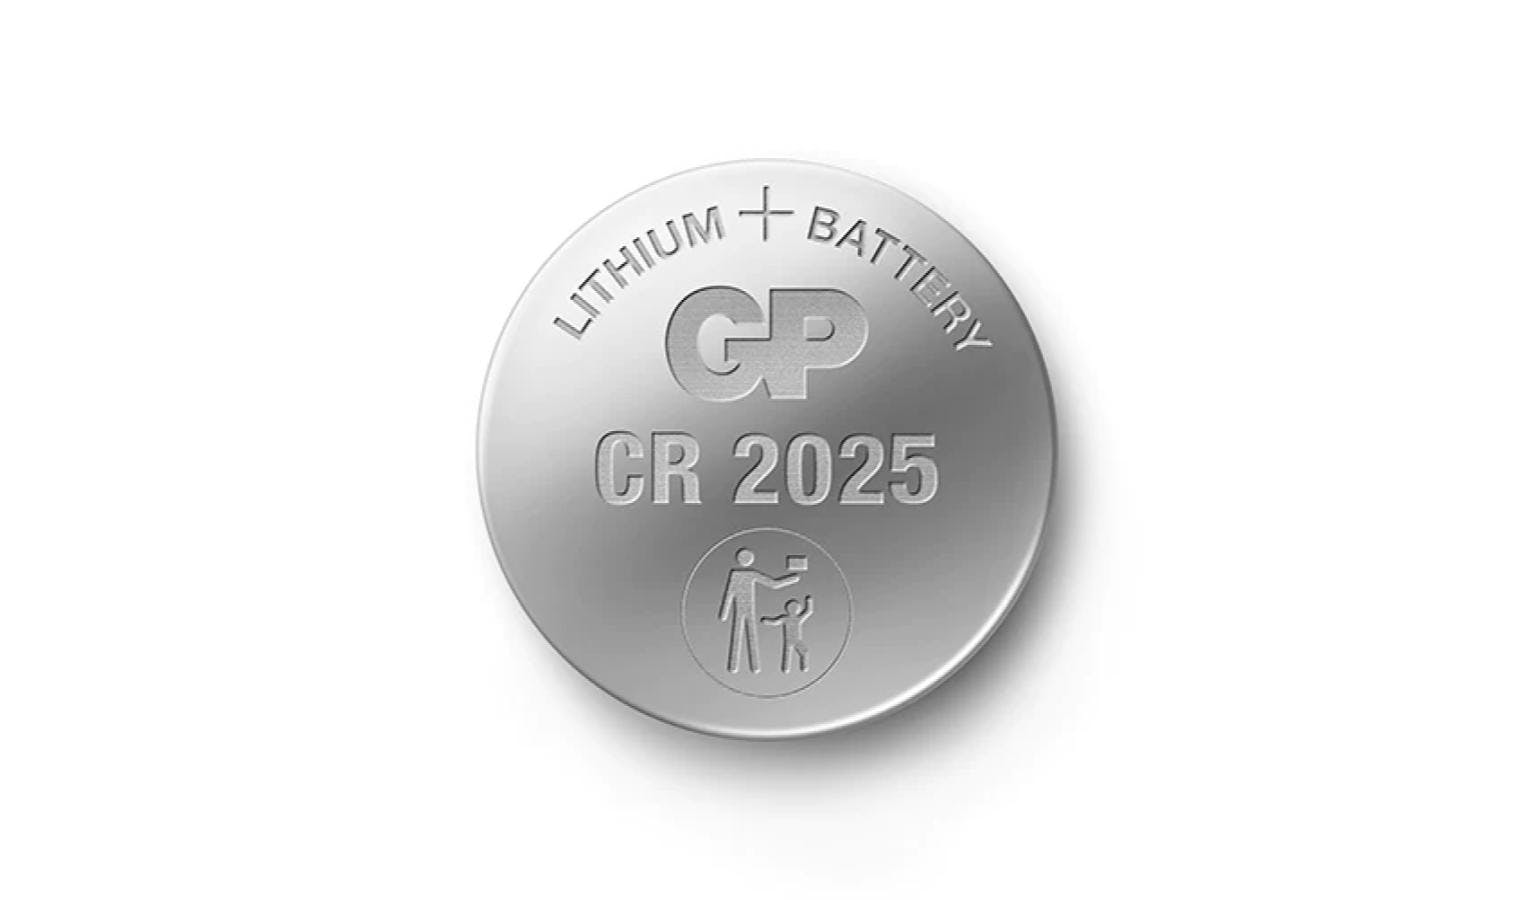 GP Lithium Coin Battery CR2025